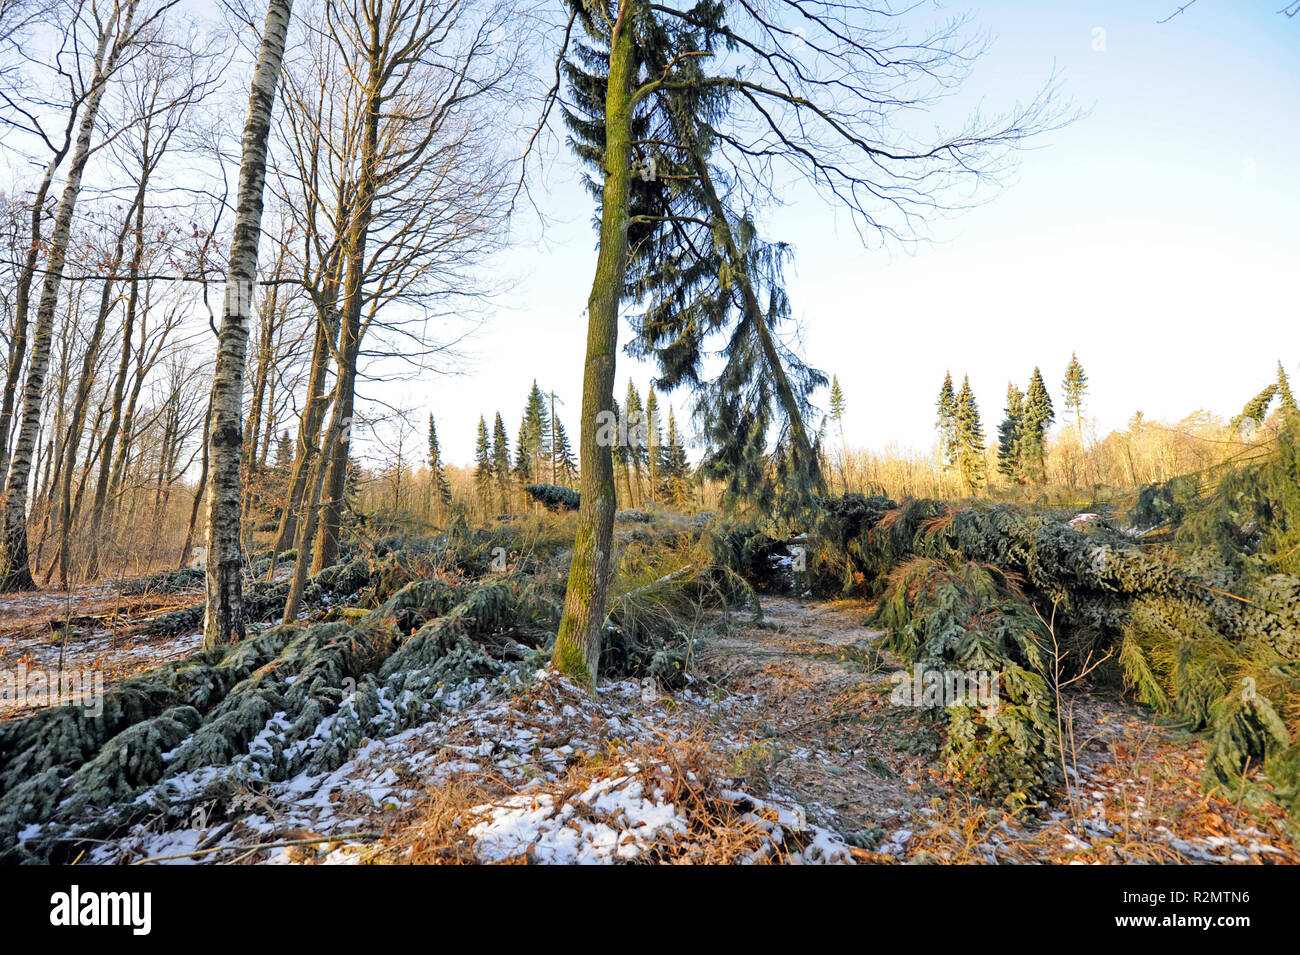 Friederike "Tormenta" barrió Sajonia a finales de enero de 2018 en la fuerza de un huracán y dejó cuantiosos daños en los bosques de Sajonia a través de árboles caídos, como aquí en Colditzer Wald Foto de stock